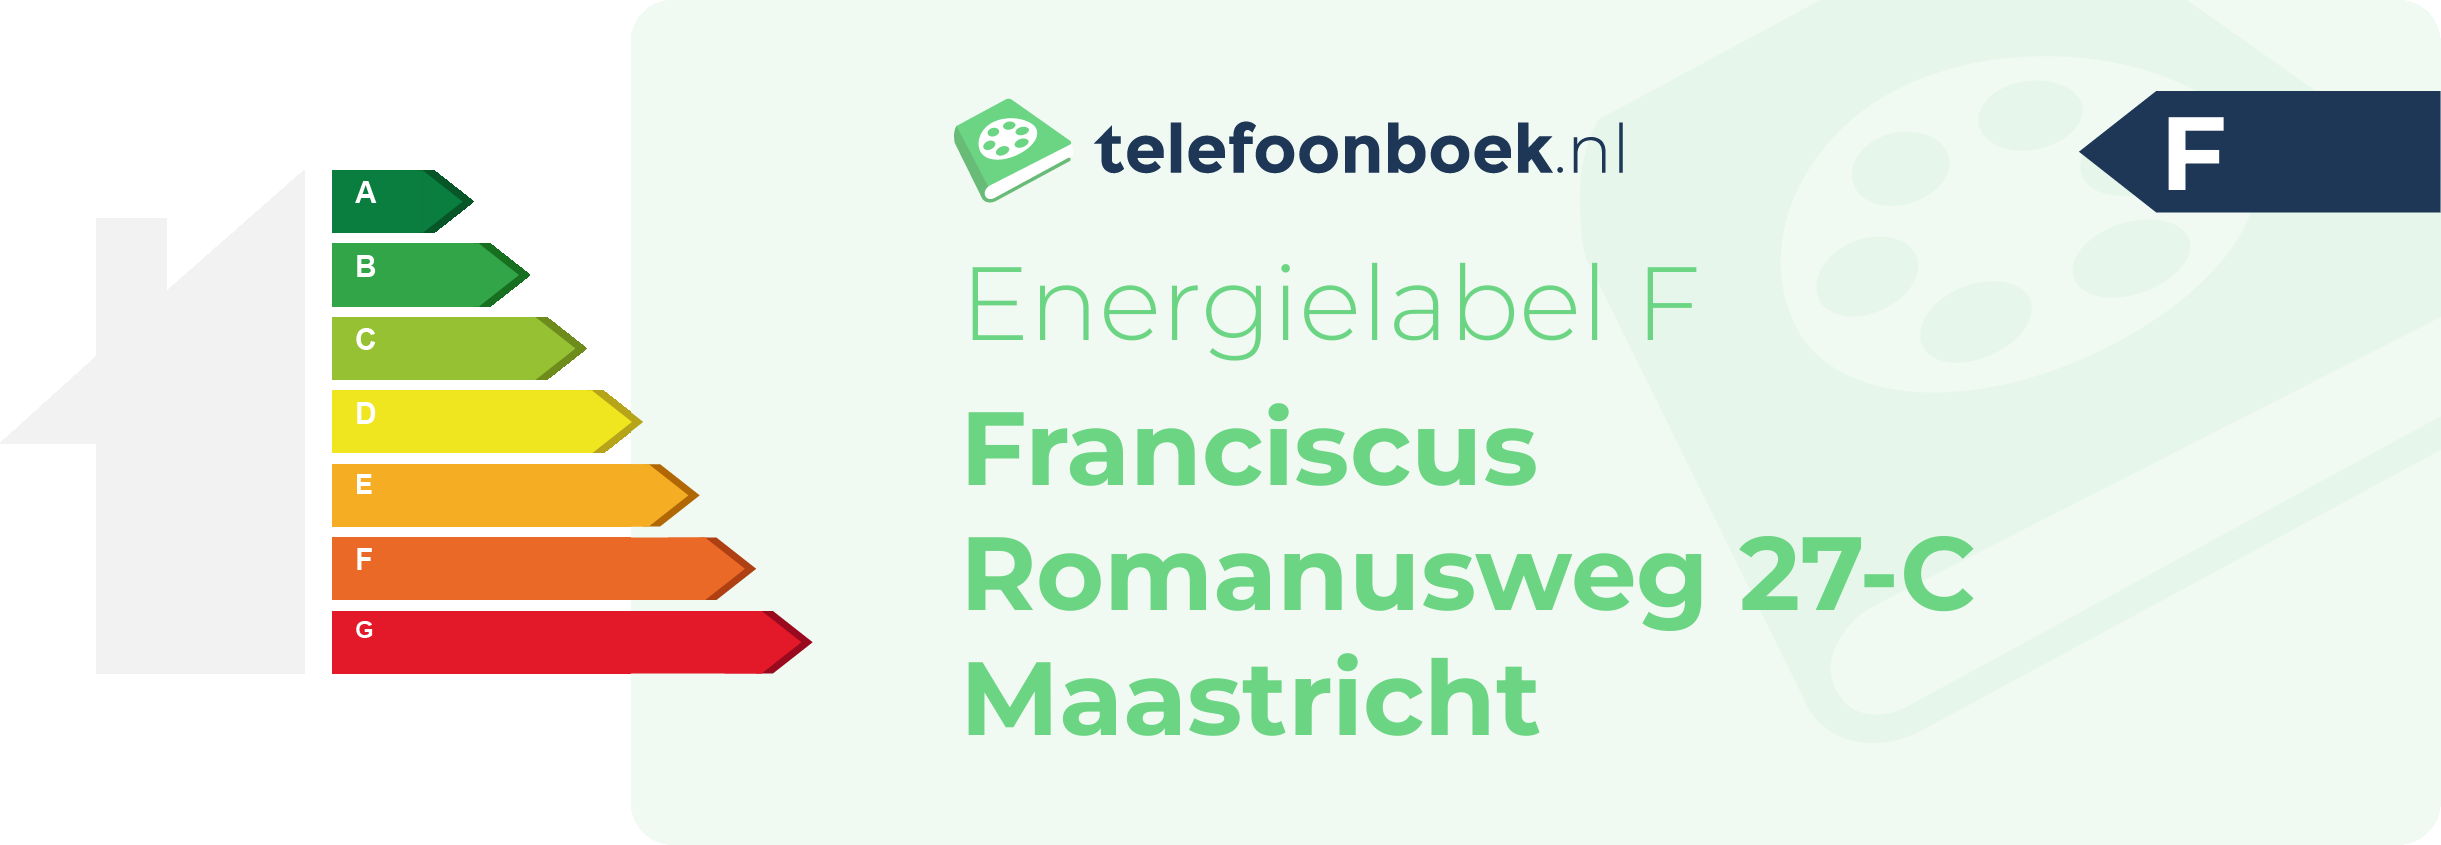 Energielabel Franciscus Romanusweg 27-C Maastricht